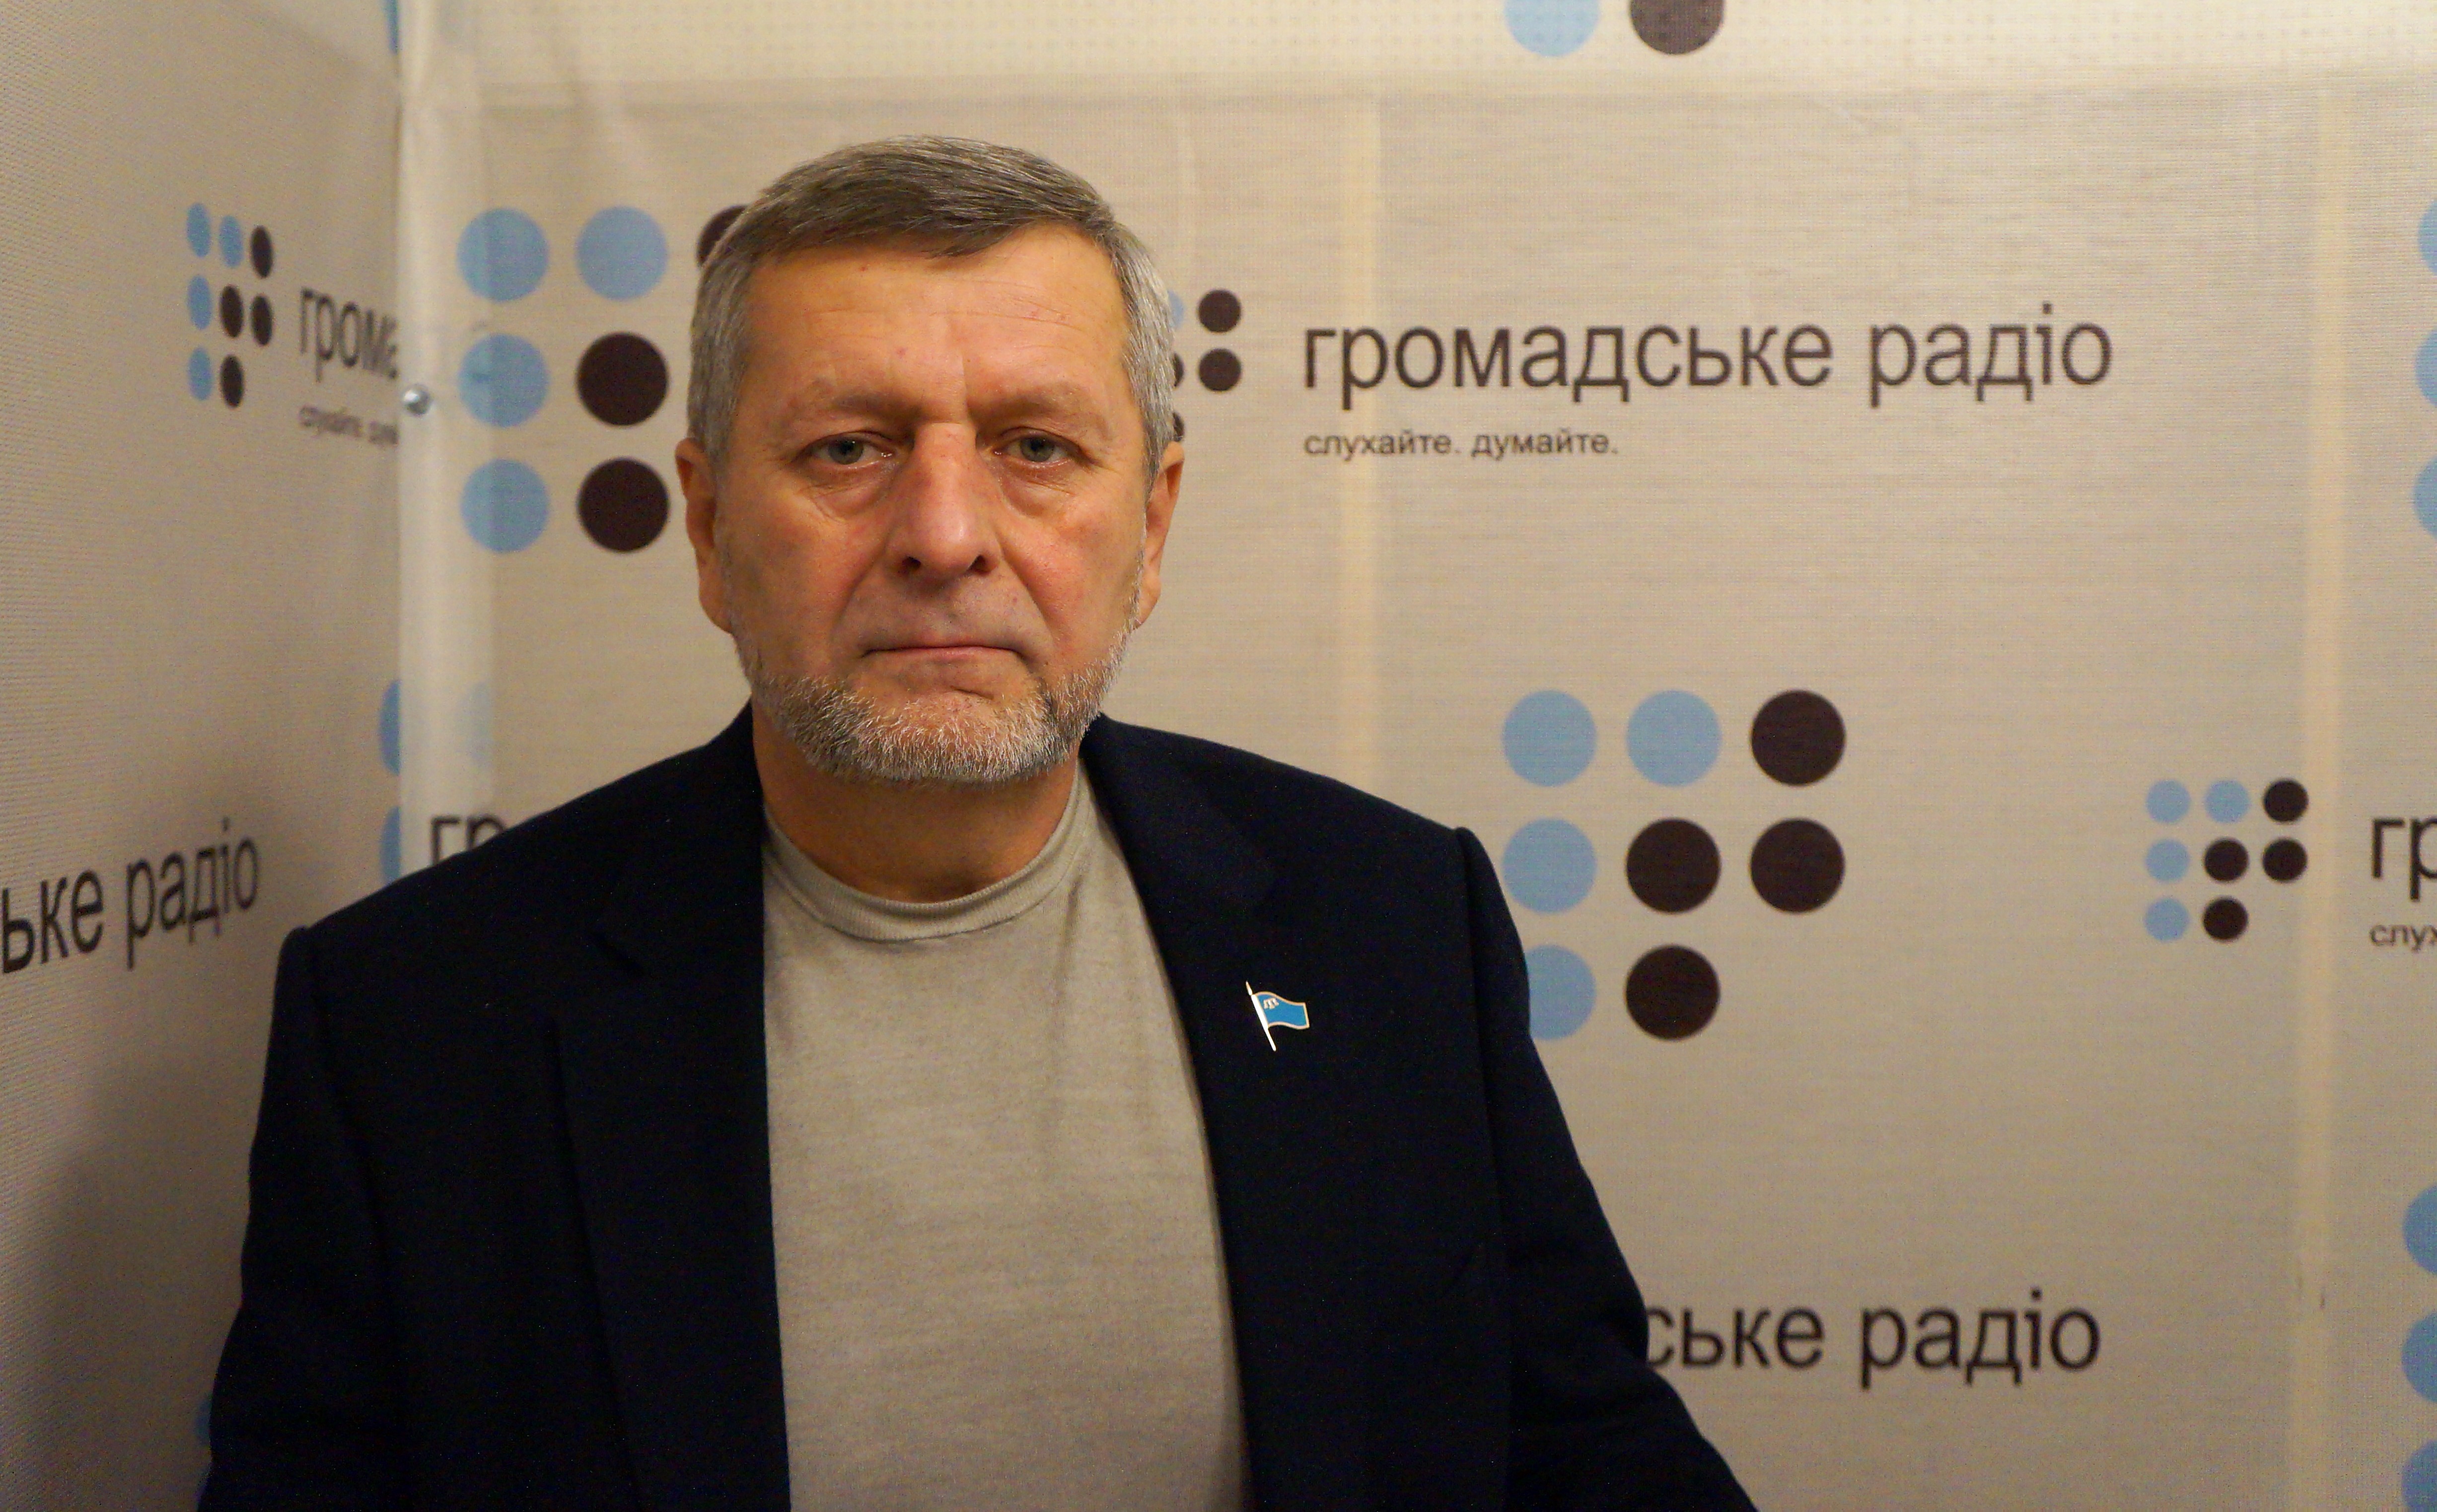 Що обговорювали делегати Курултаю кримських татар у Києві? Інтерв’ю з Ахтемом Чийгозом